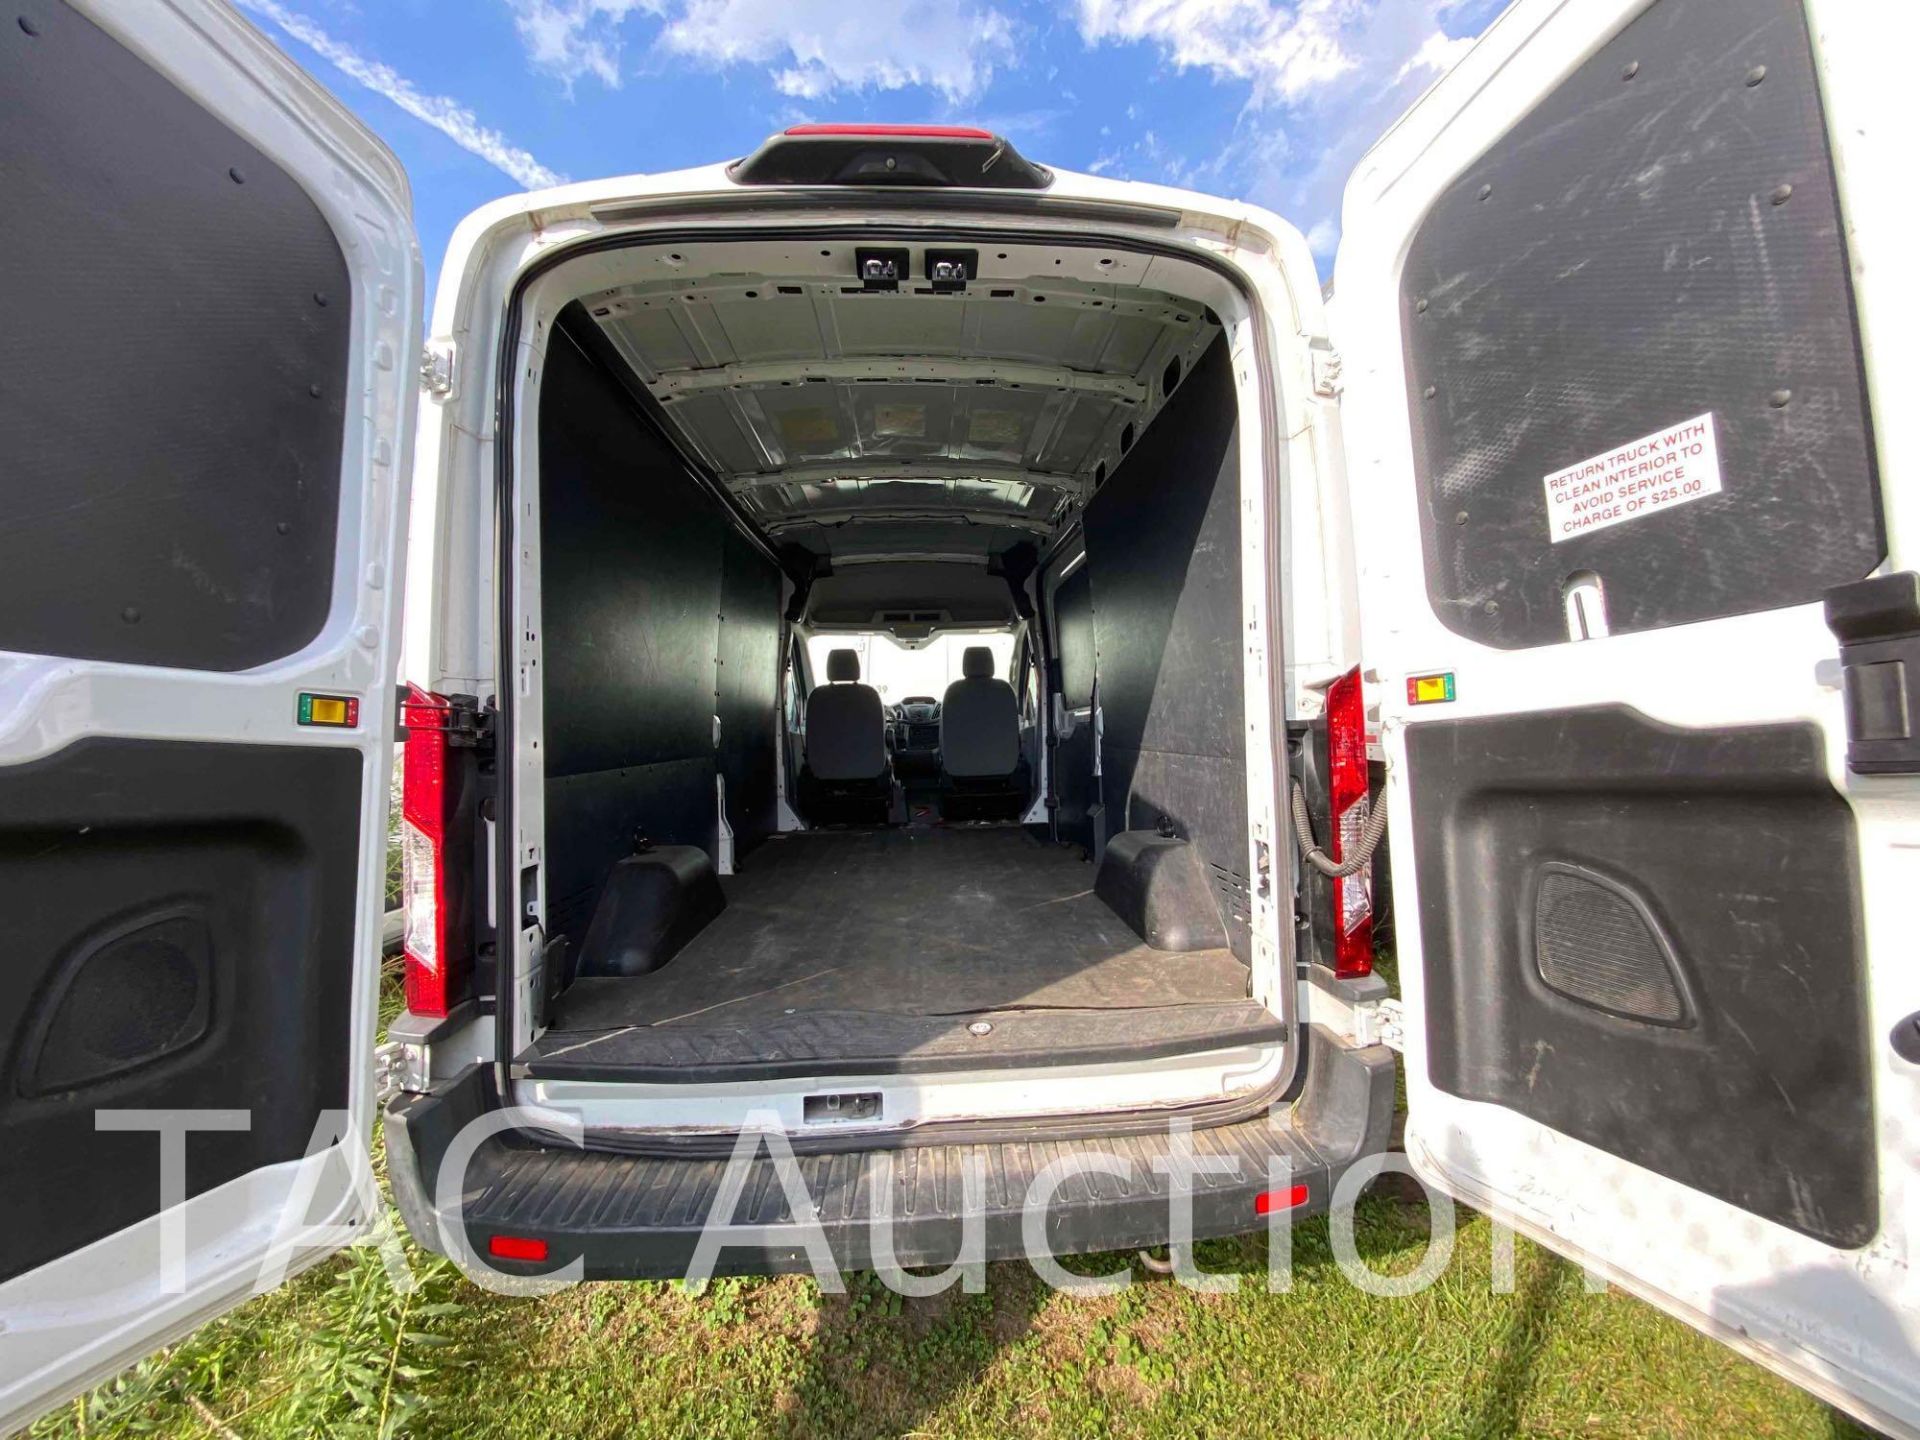 2019 Ford Transit 150 Cargo Van - Image 12 of 43